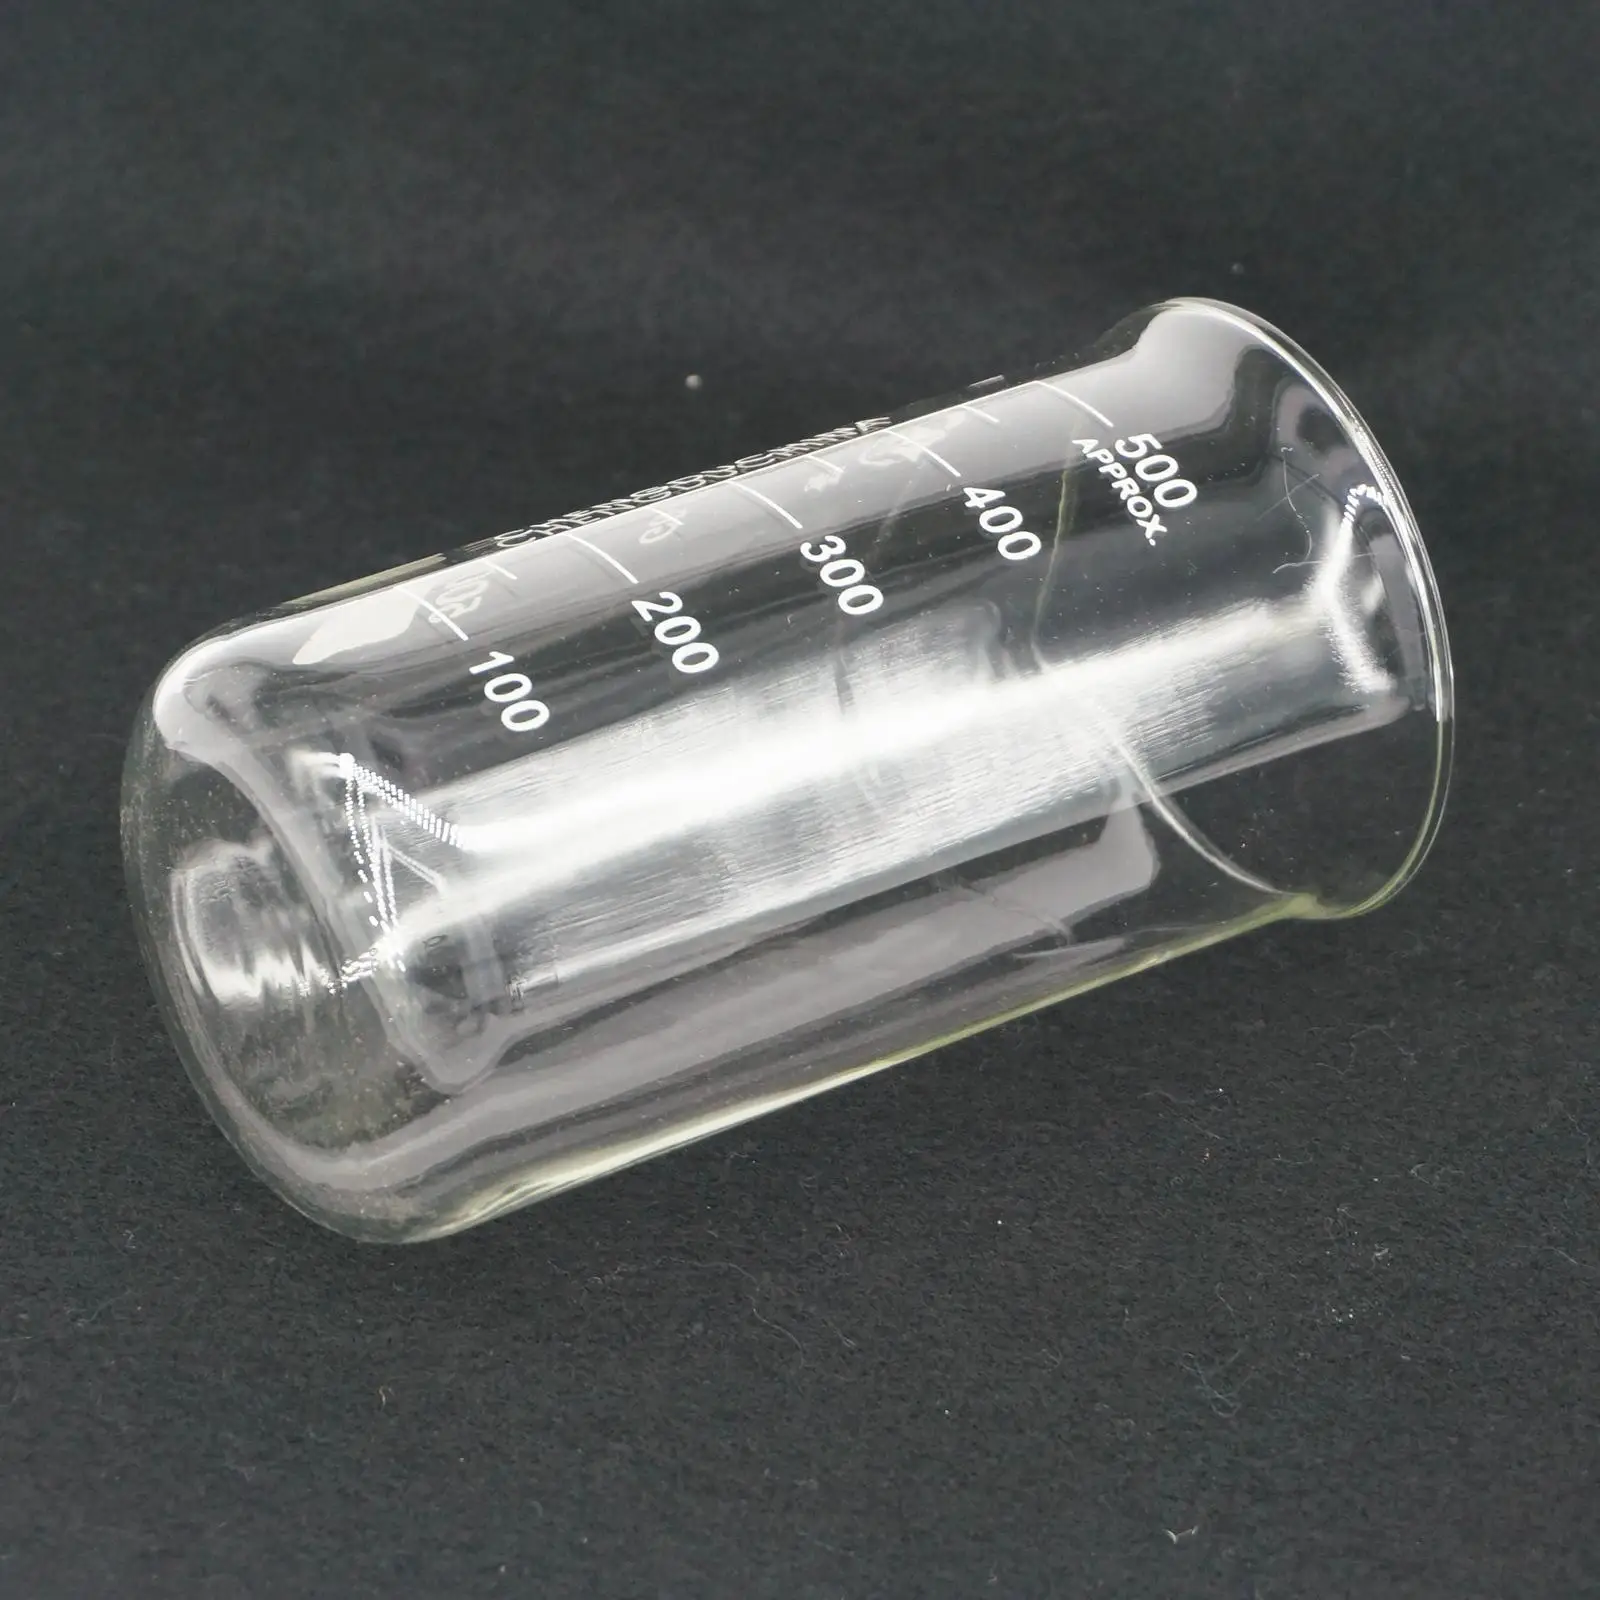 500 мл высокая форма стакан из боросиликатного стекла для химической лаборатории прозрачный стакан утолщенный с носиком